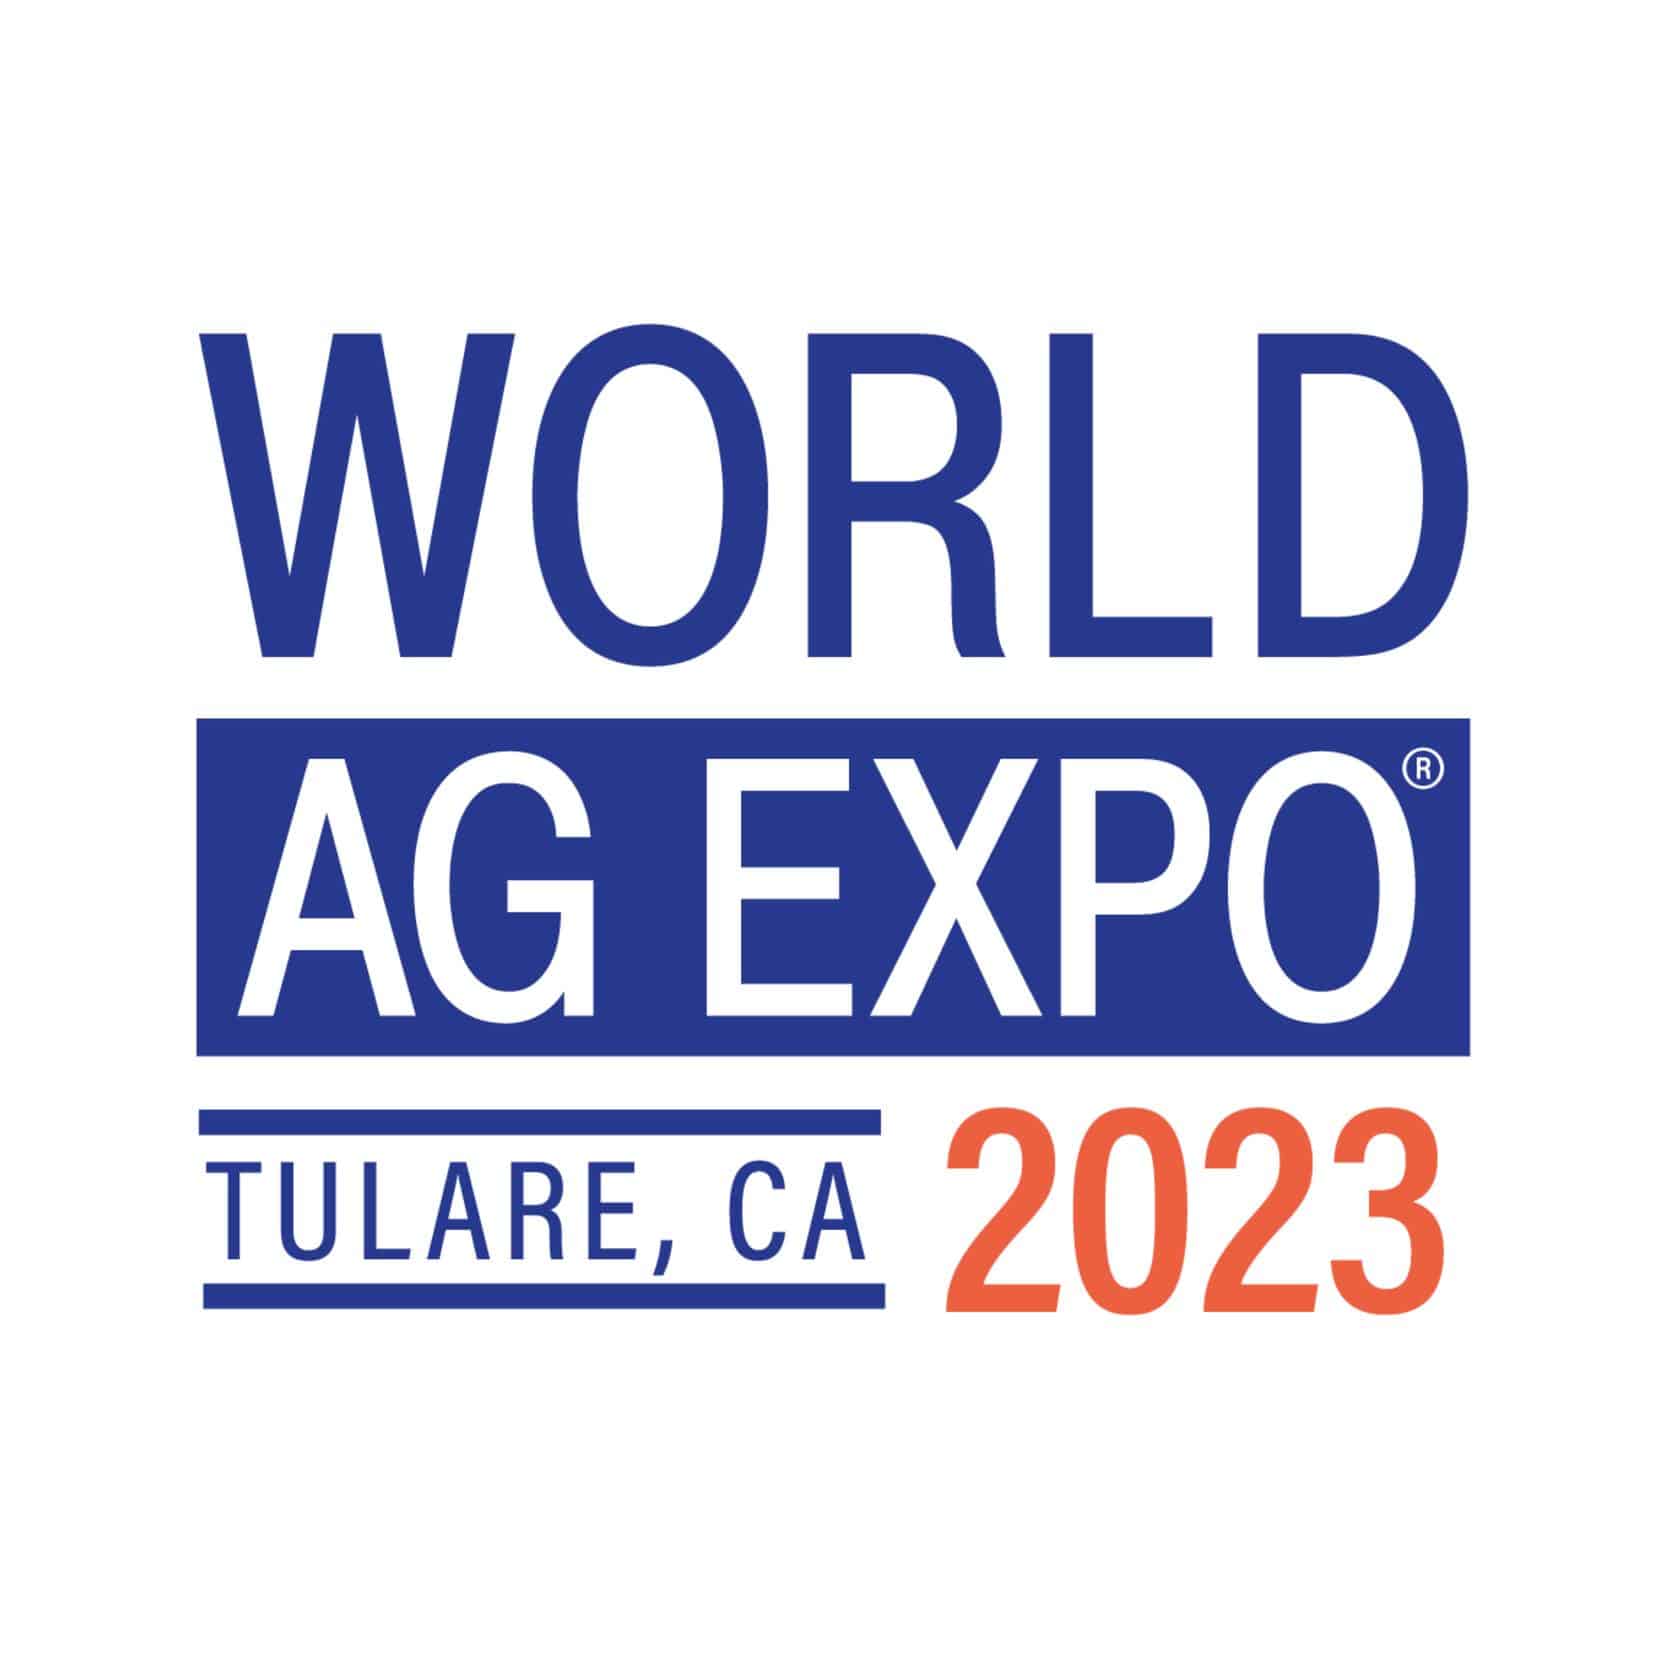 World Ag Expo 2023